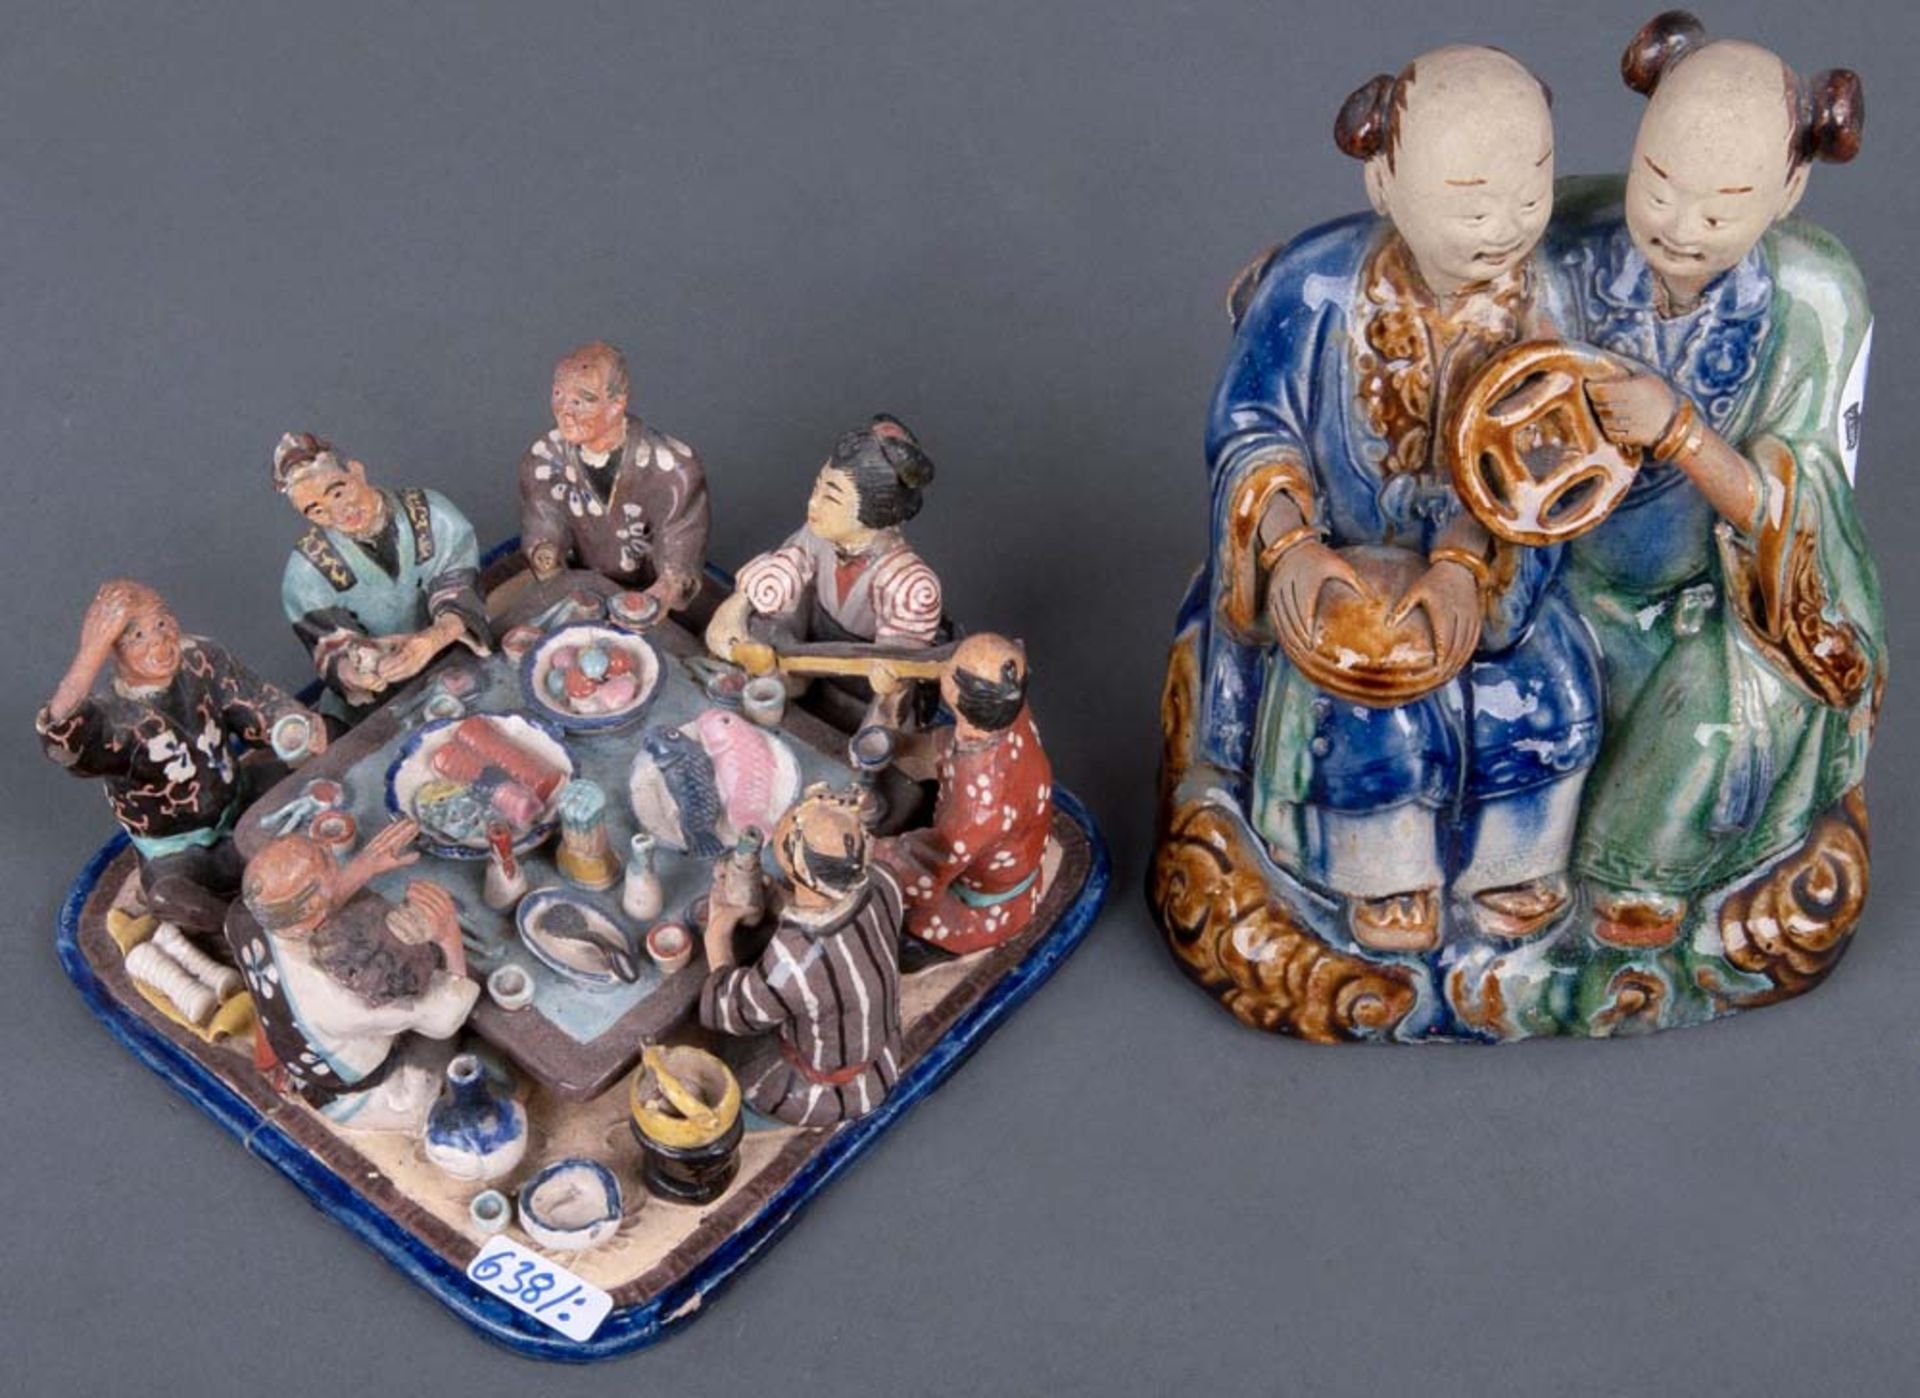 Tischgesellschaft und Figurenpaar. Asien. Keramik, bunt bemalt, H=8 / 18 cm. (besch.)